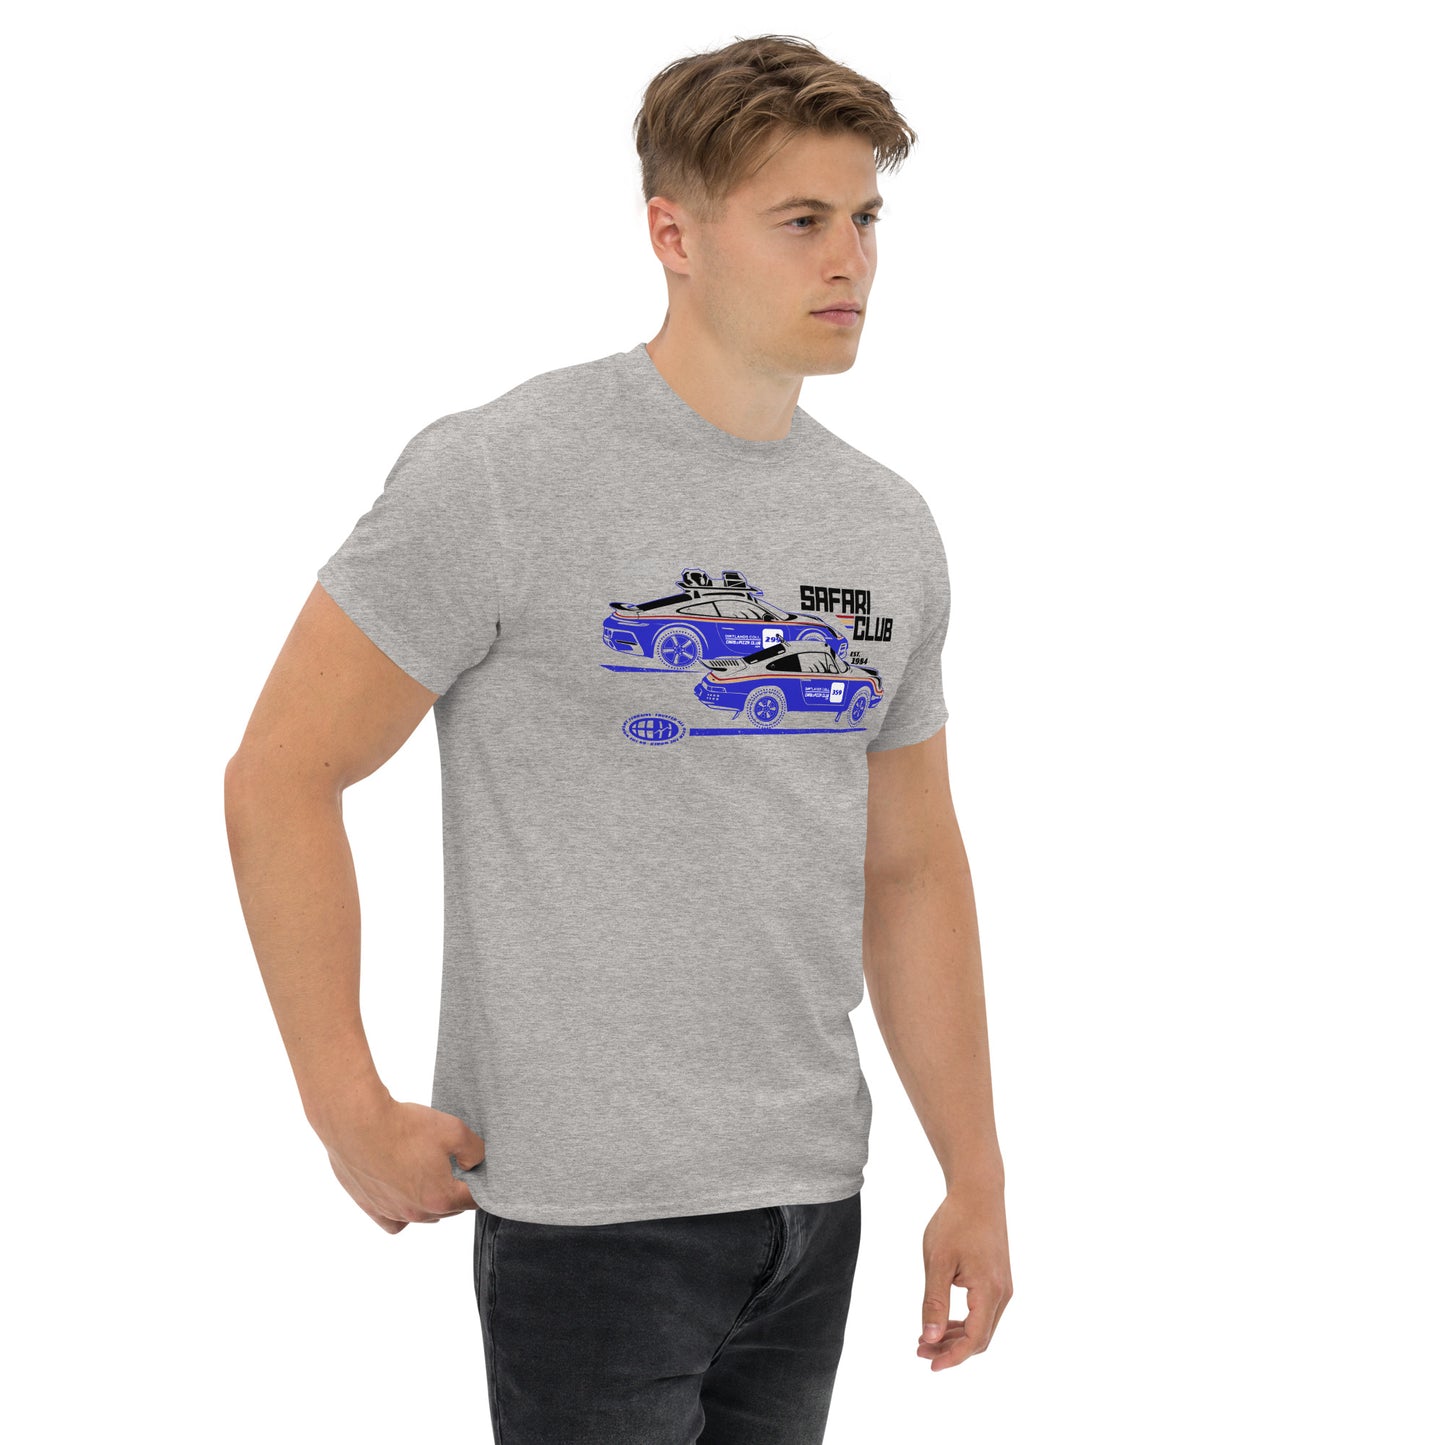 Camiseta unisex "Safari Club"